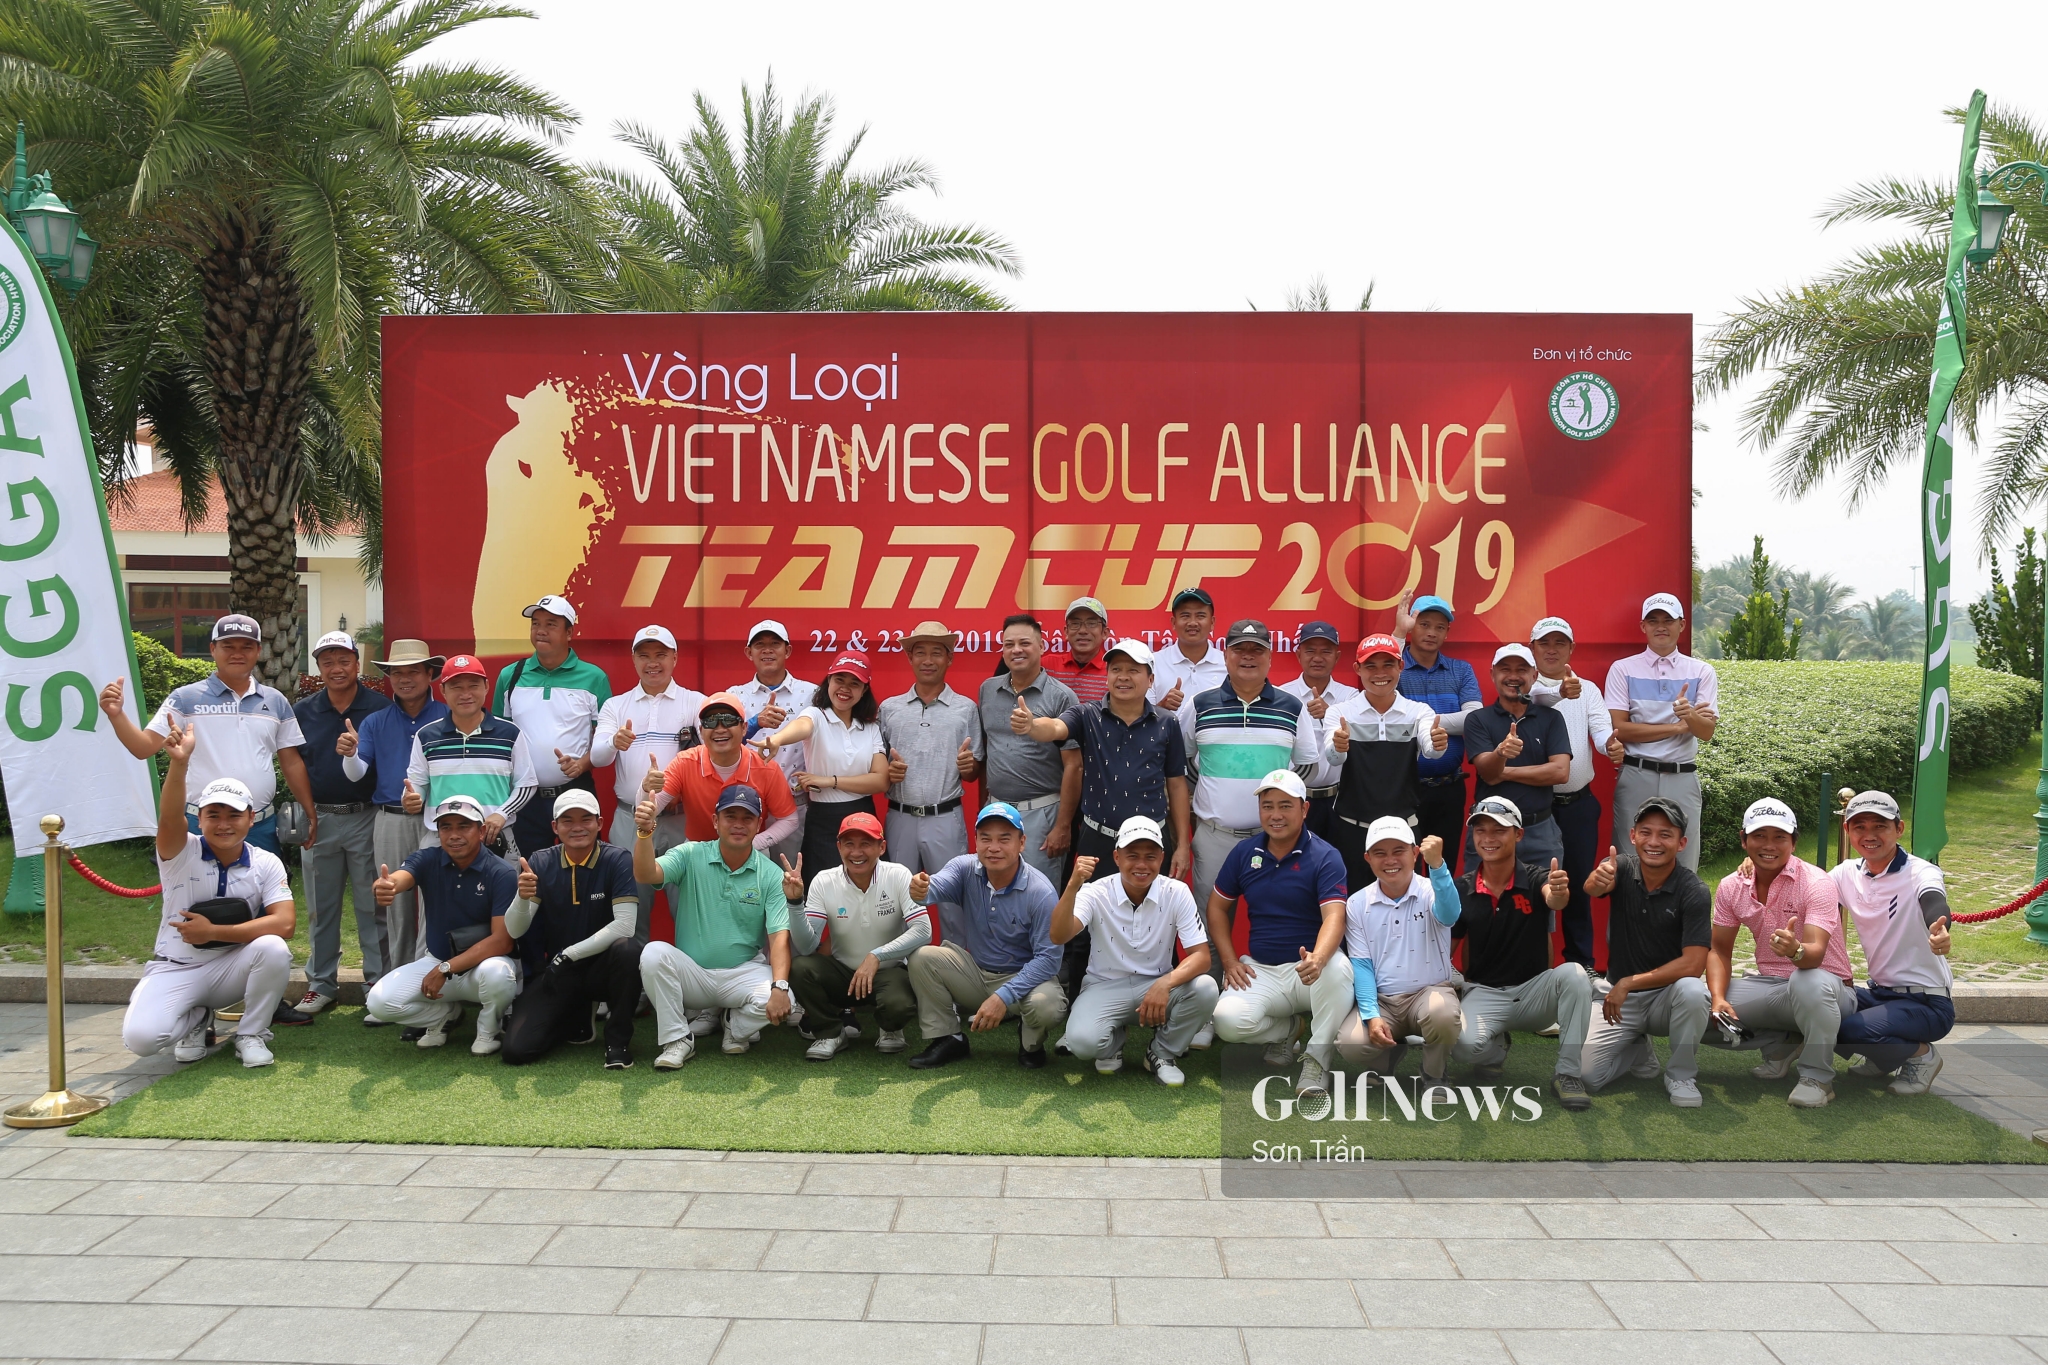 Nhiều anh tài tham dự vòng loại VietNamese Golf Alliance Team Cup